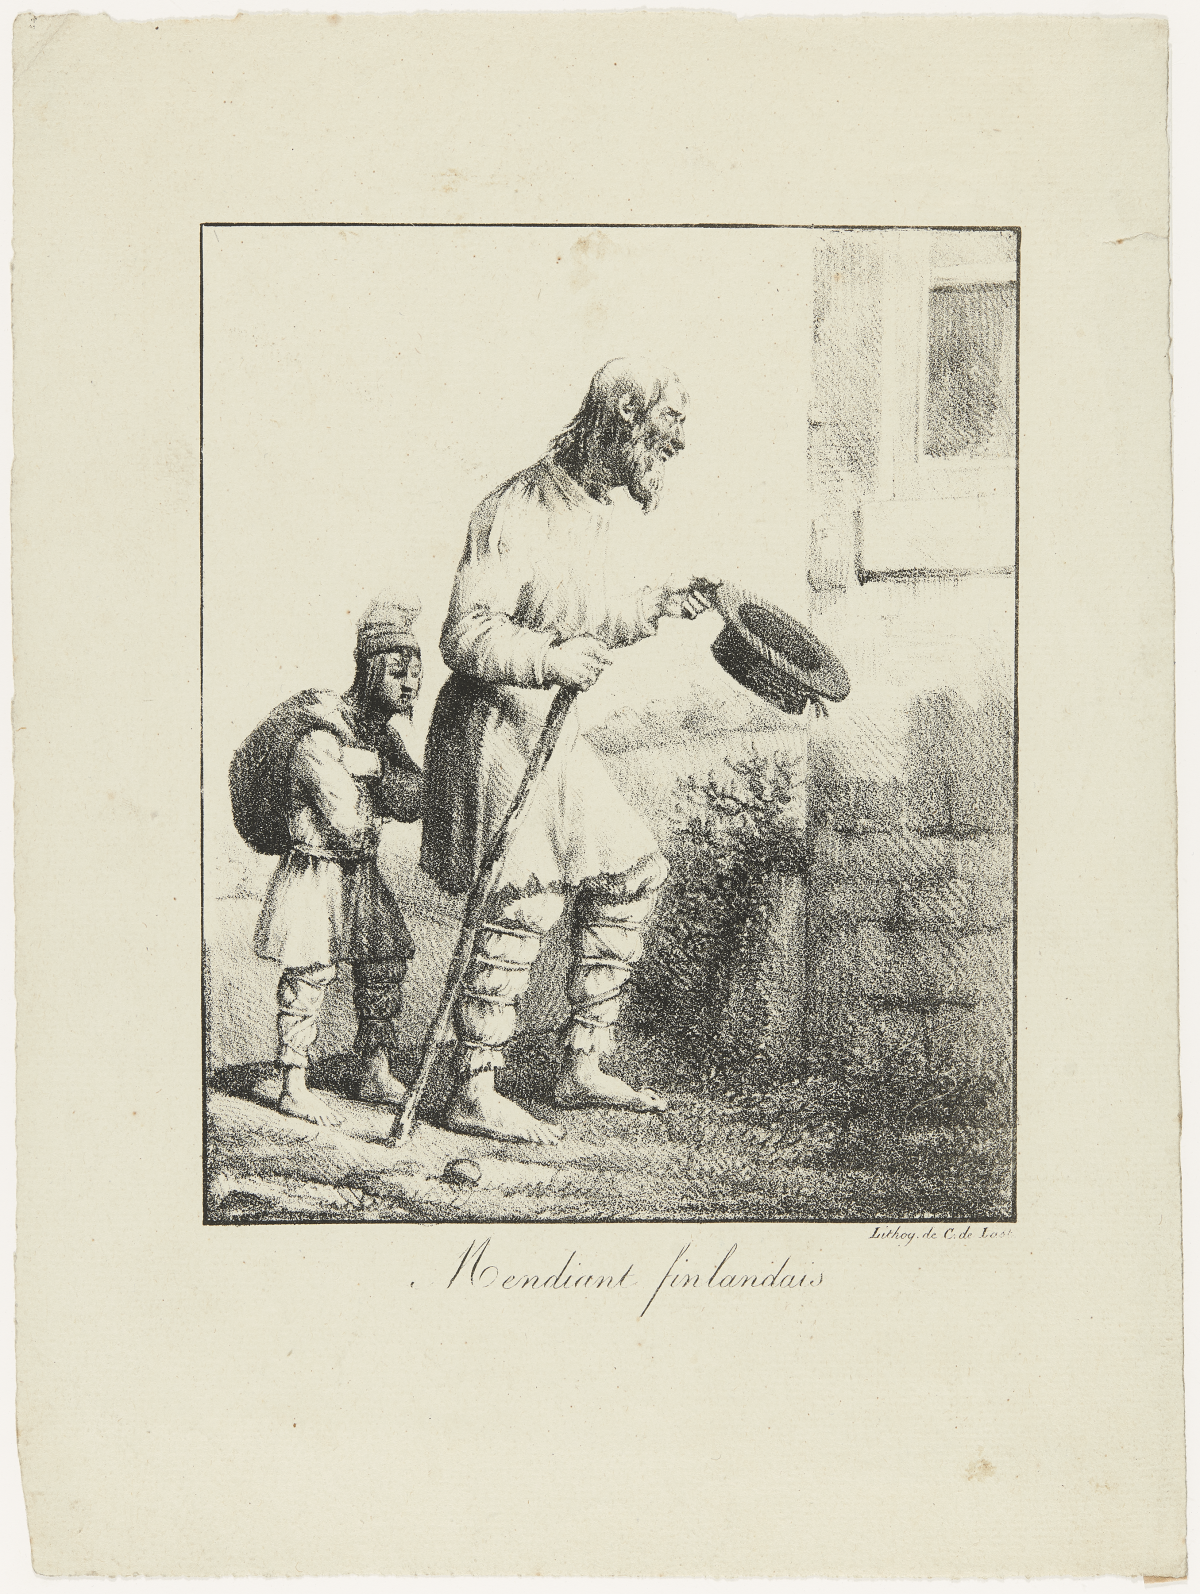 Kerjäläisukko ja -poika. C. de Lastin litografia 1820-40-luvulta. Kuvaaja: Museovirasto